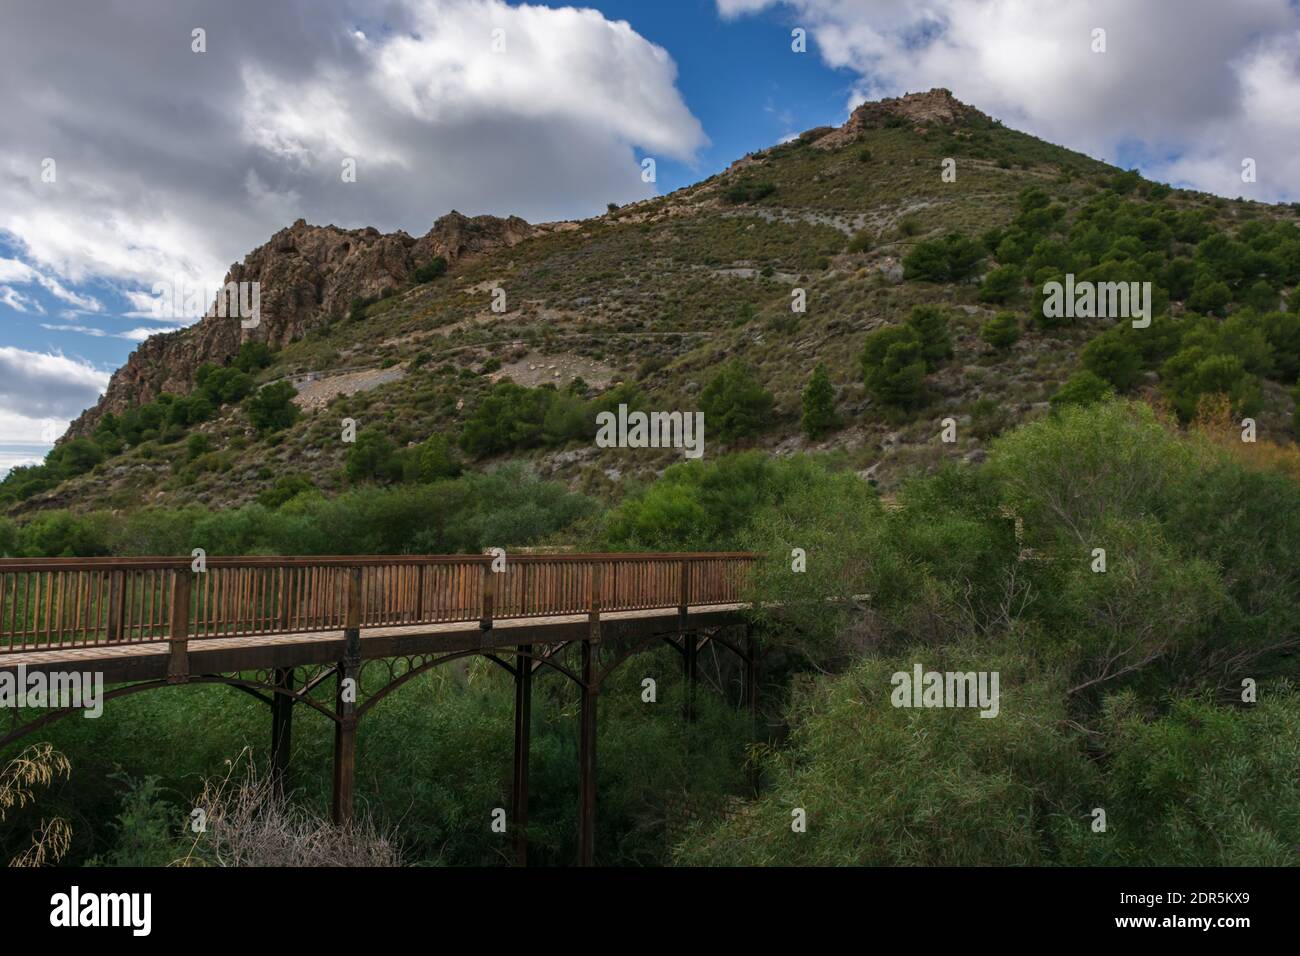 Ponte di ferro nel parco peri-urbano di Cerro del toro, Motril. Foto Stock